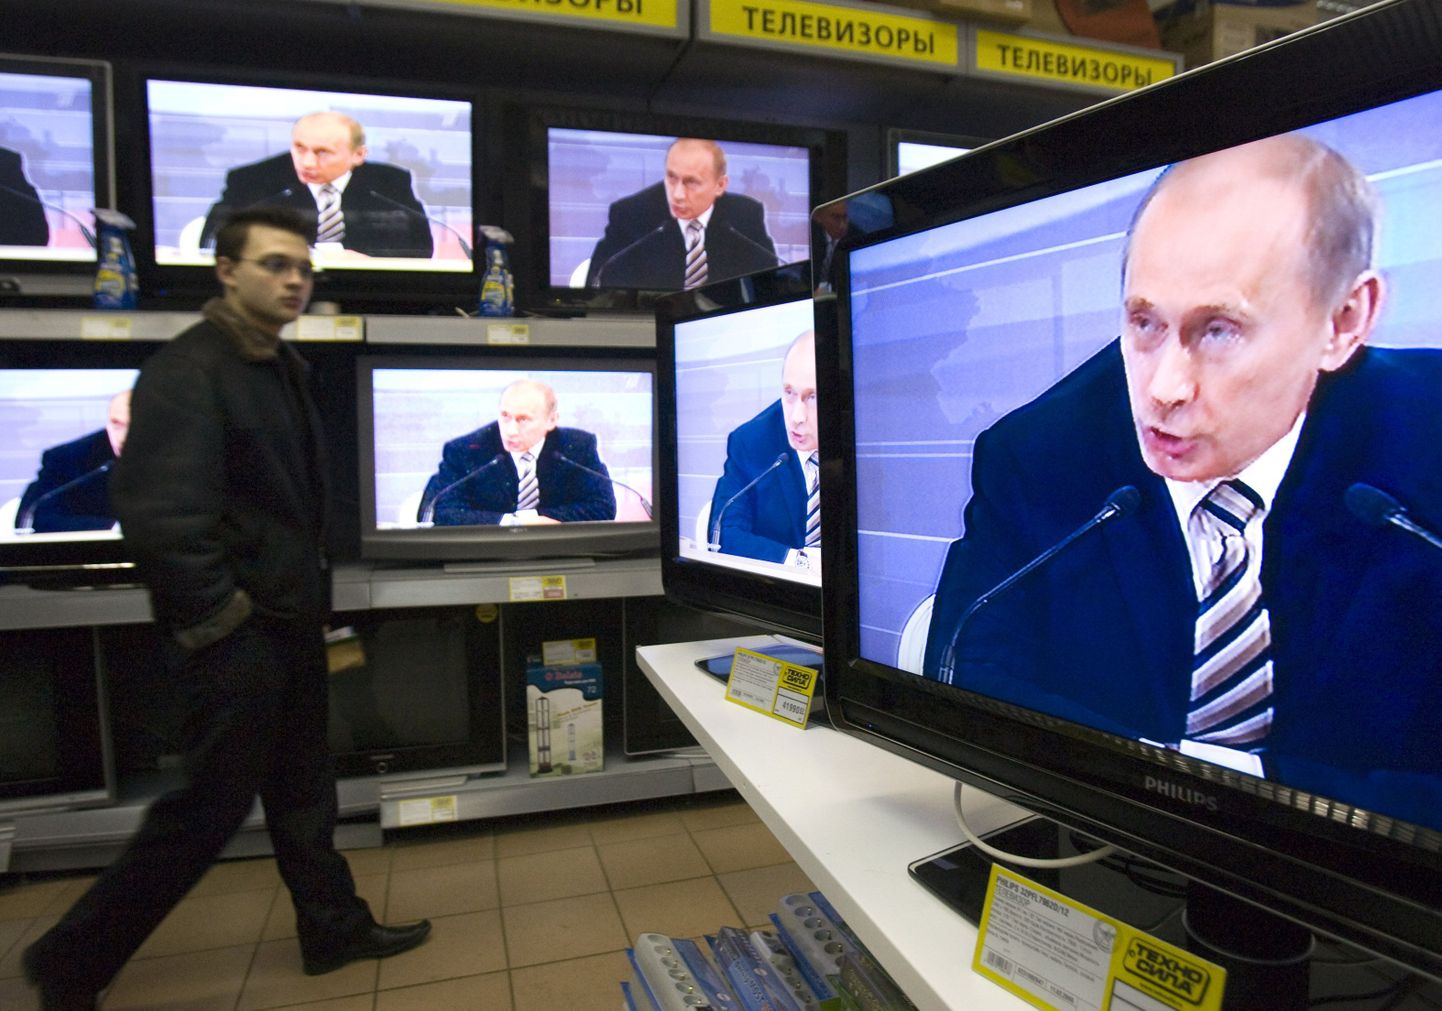 Pilt on tehtud tänavu veebruaris, kui Vene telekanalid kandisd üle toonase riigi presidendi Vladimir Putini kõne.